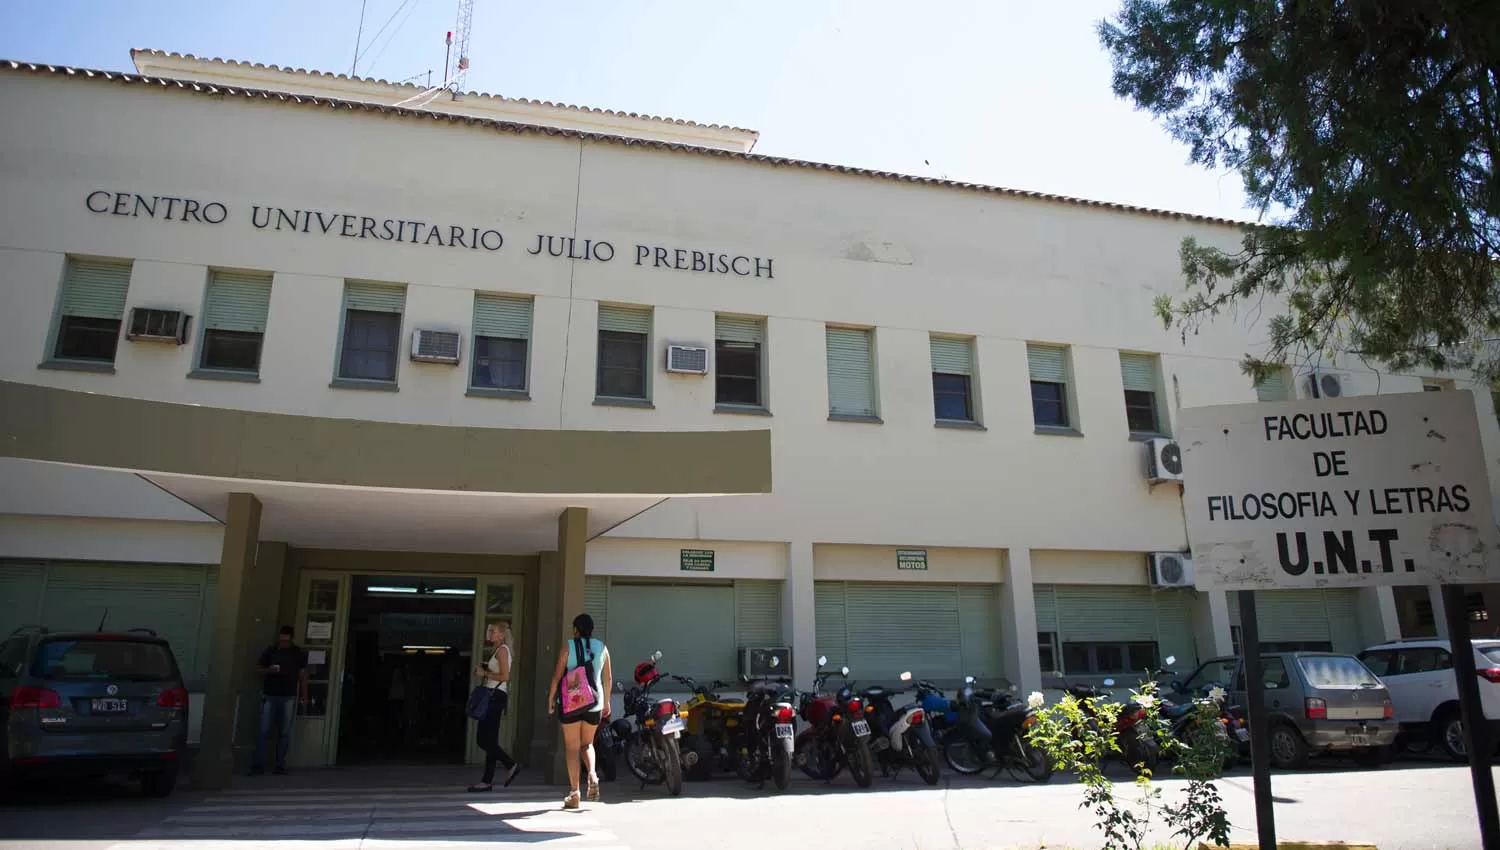 Centro Universitario Julio Prebisch. Facultad de Filosofía y Letras